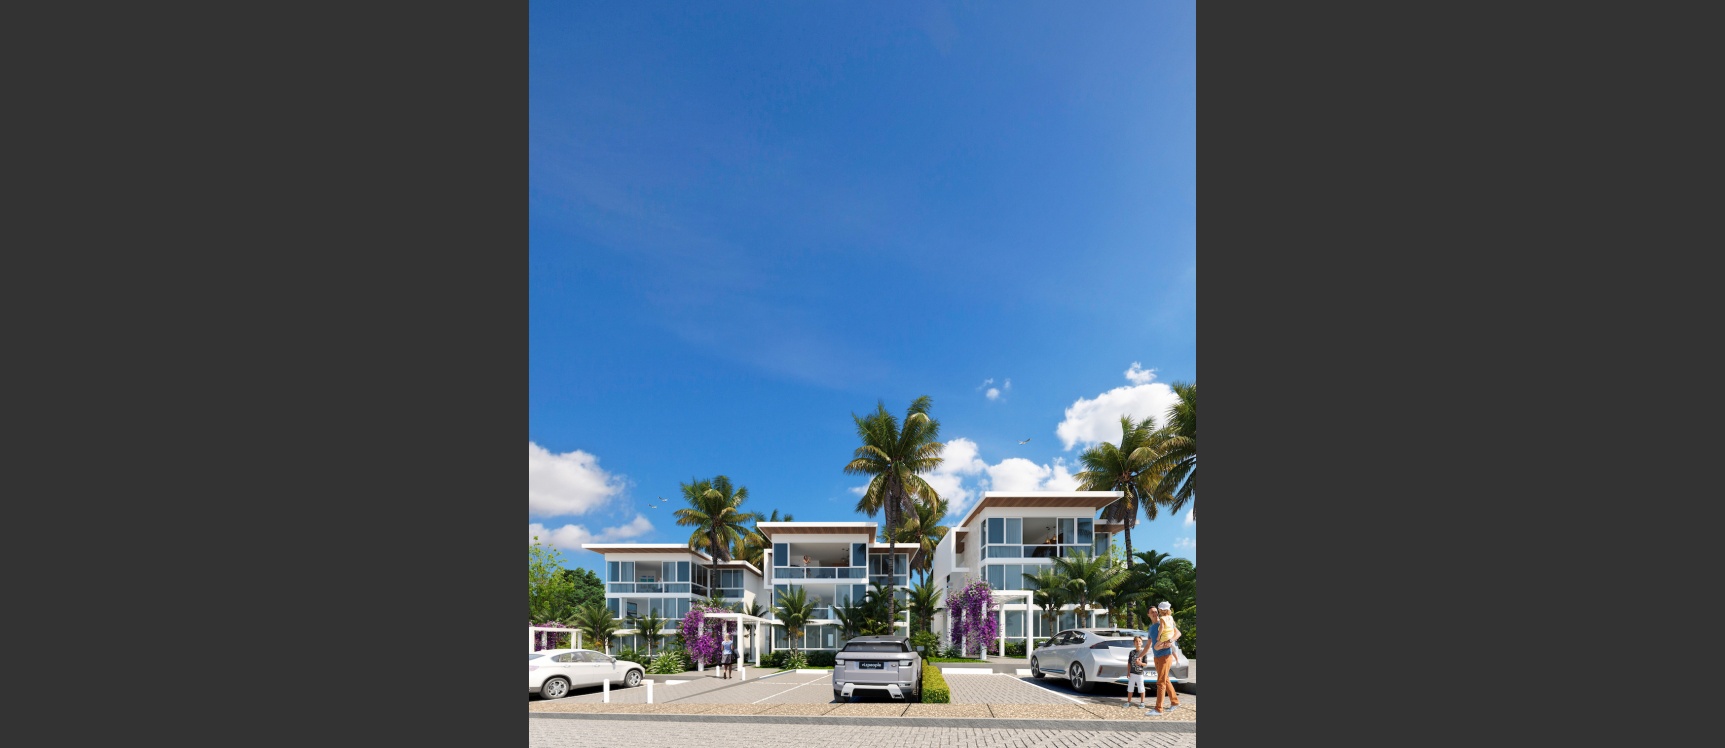 GeoBienes - Departamento 3 Dormitorios - Vista 4 - Planta Baja - Plusvalia Guayaquil Casas de venta y alquiler Inmobiliaria Ecuador